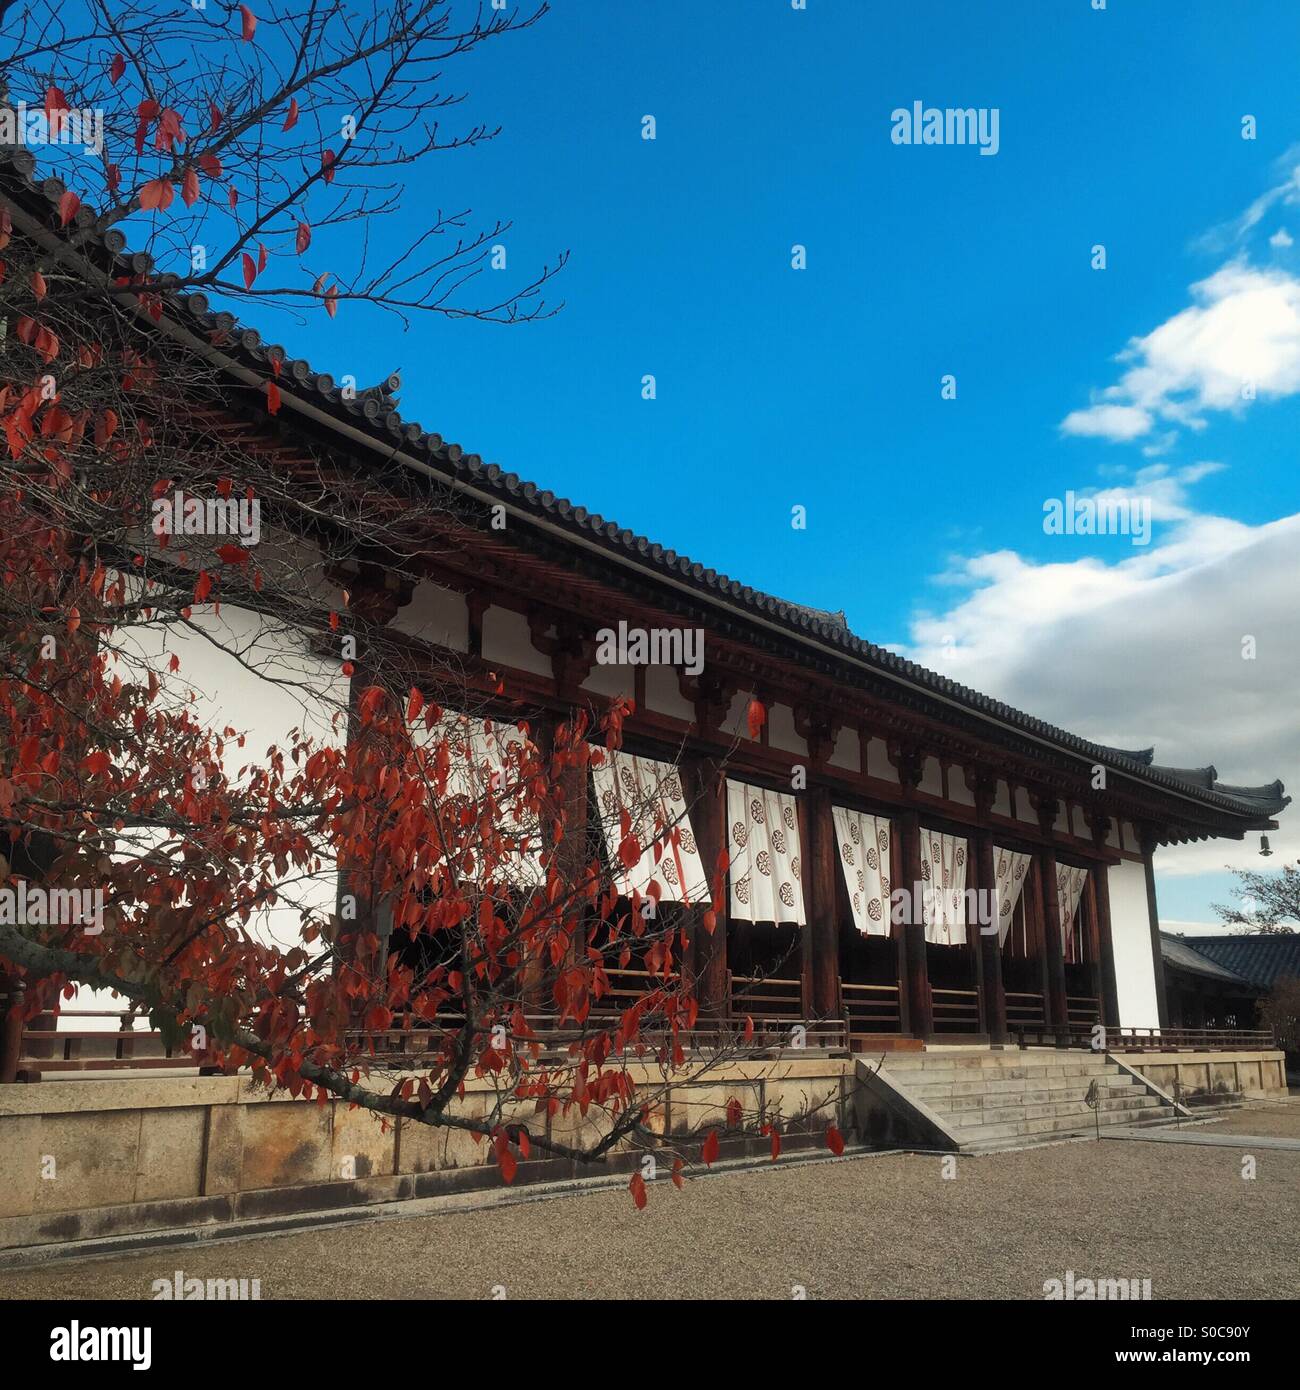 Aula magna con foglie di autunno al Tempio di Horyu-ji o tempio di apprendimento della fioritura di legge, un tempio buddista fondata nel 607 D.C. in Ikaruga, Prefettura di Nara, Giappone. Foto Stock